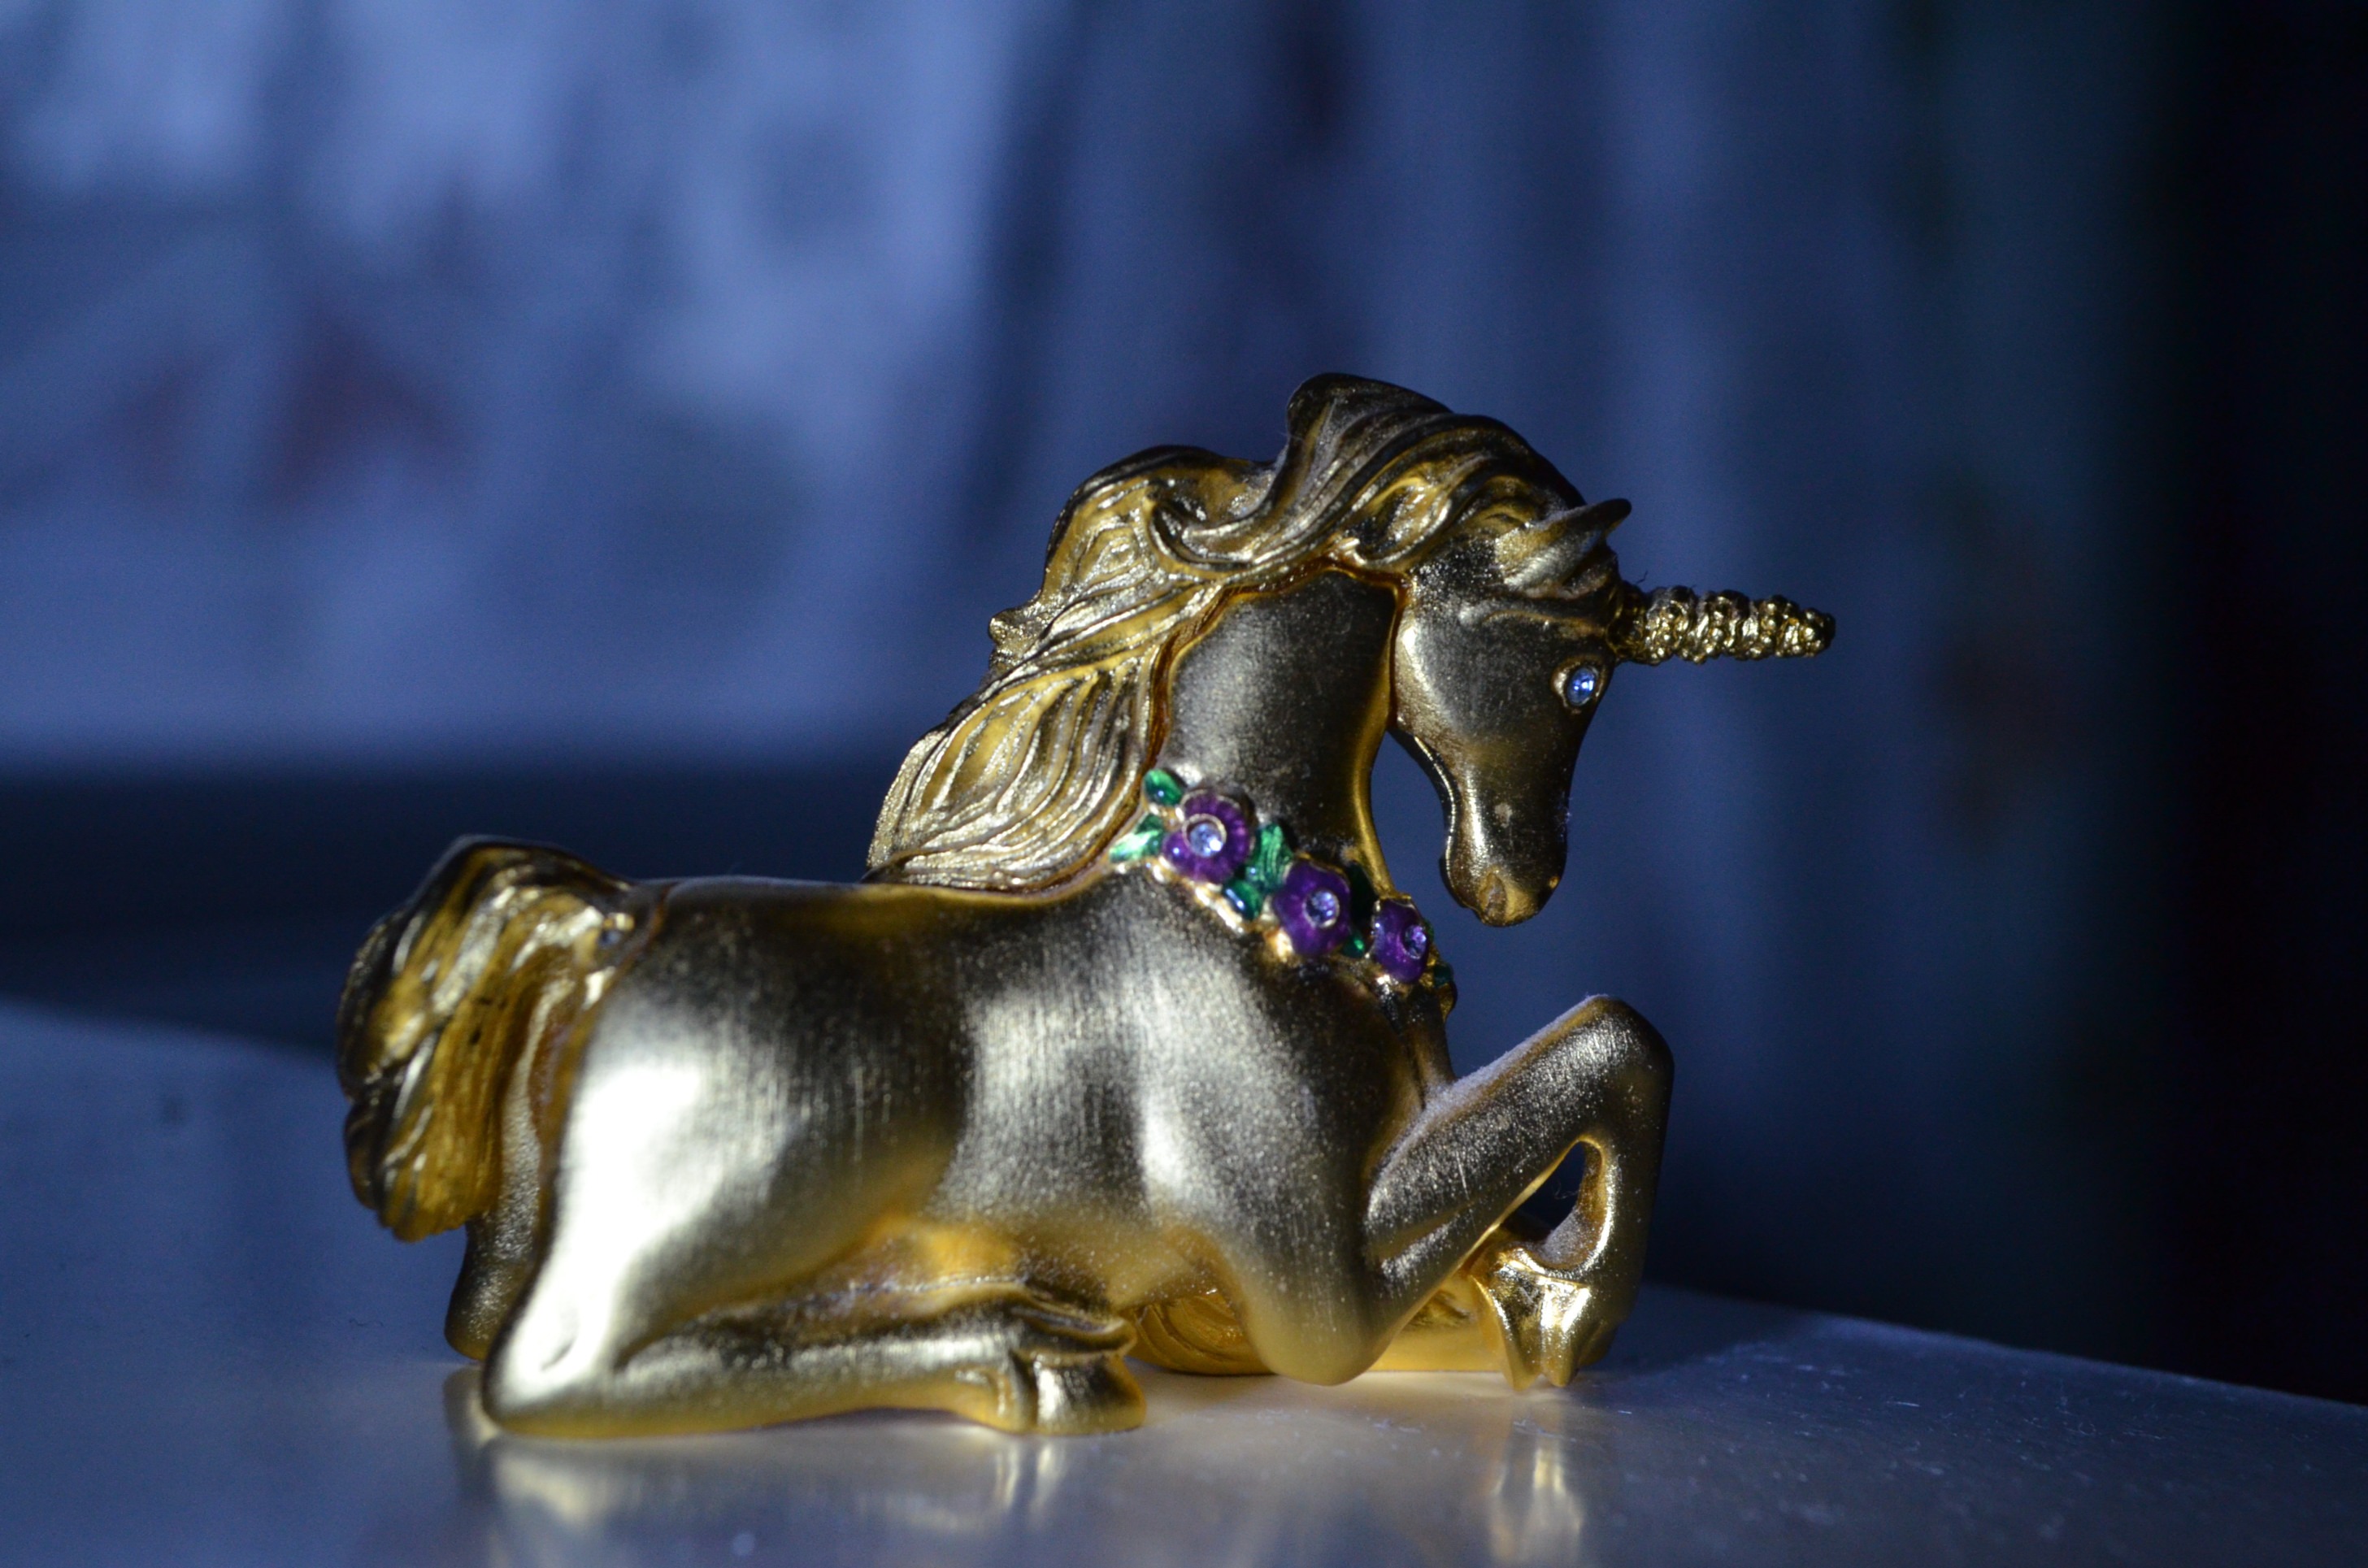 Gold Unicorn figurine